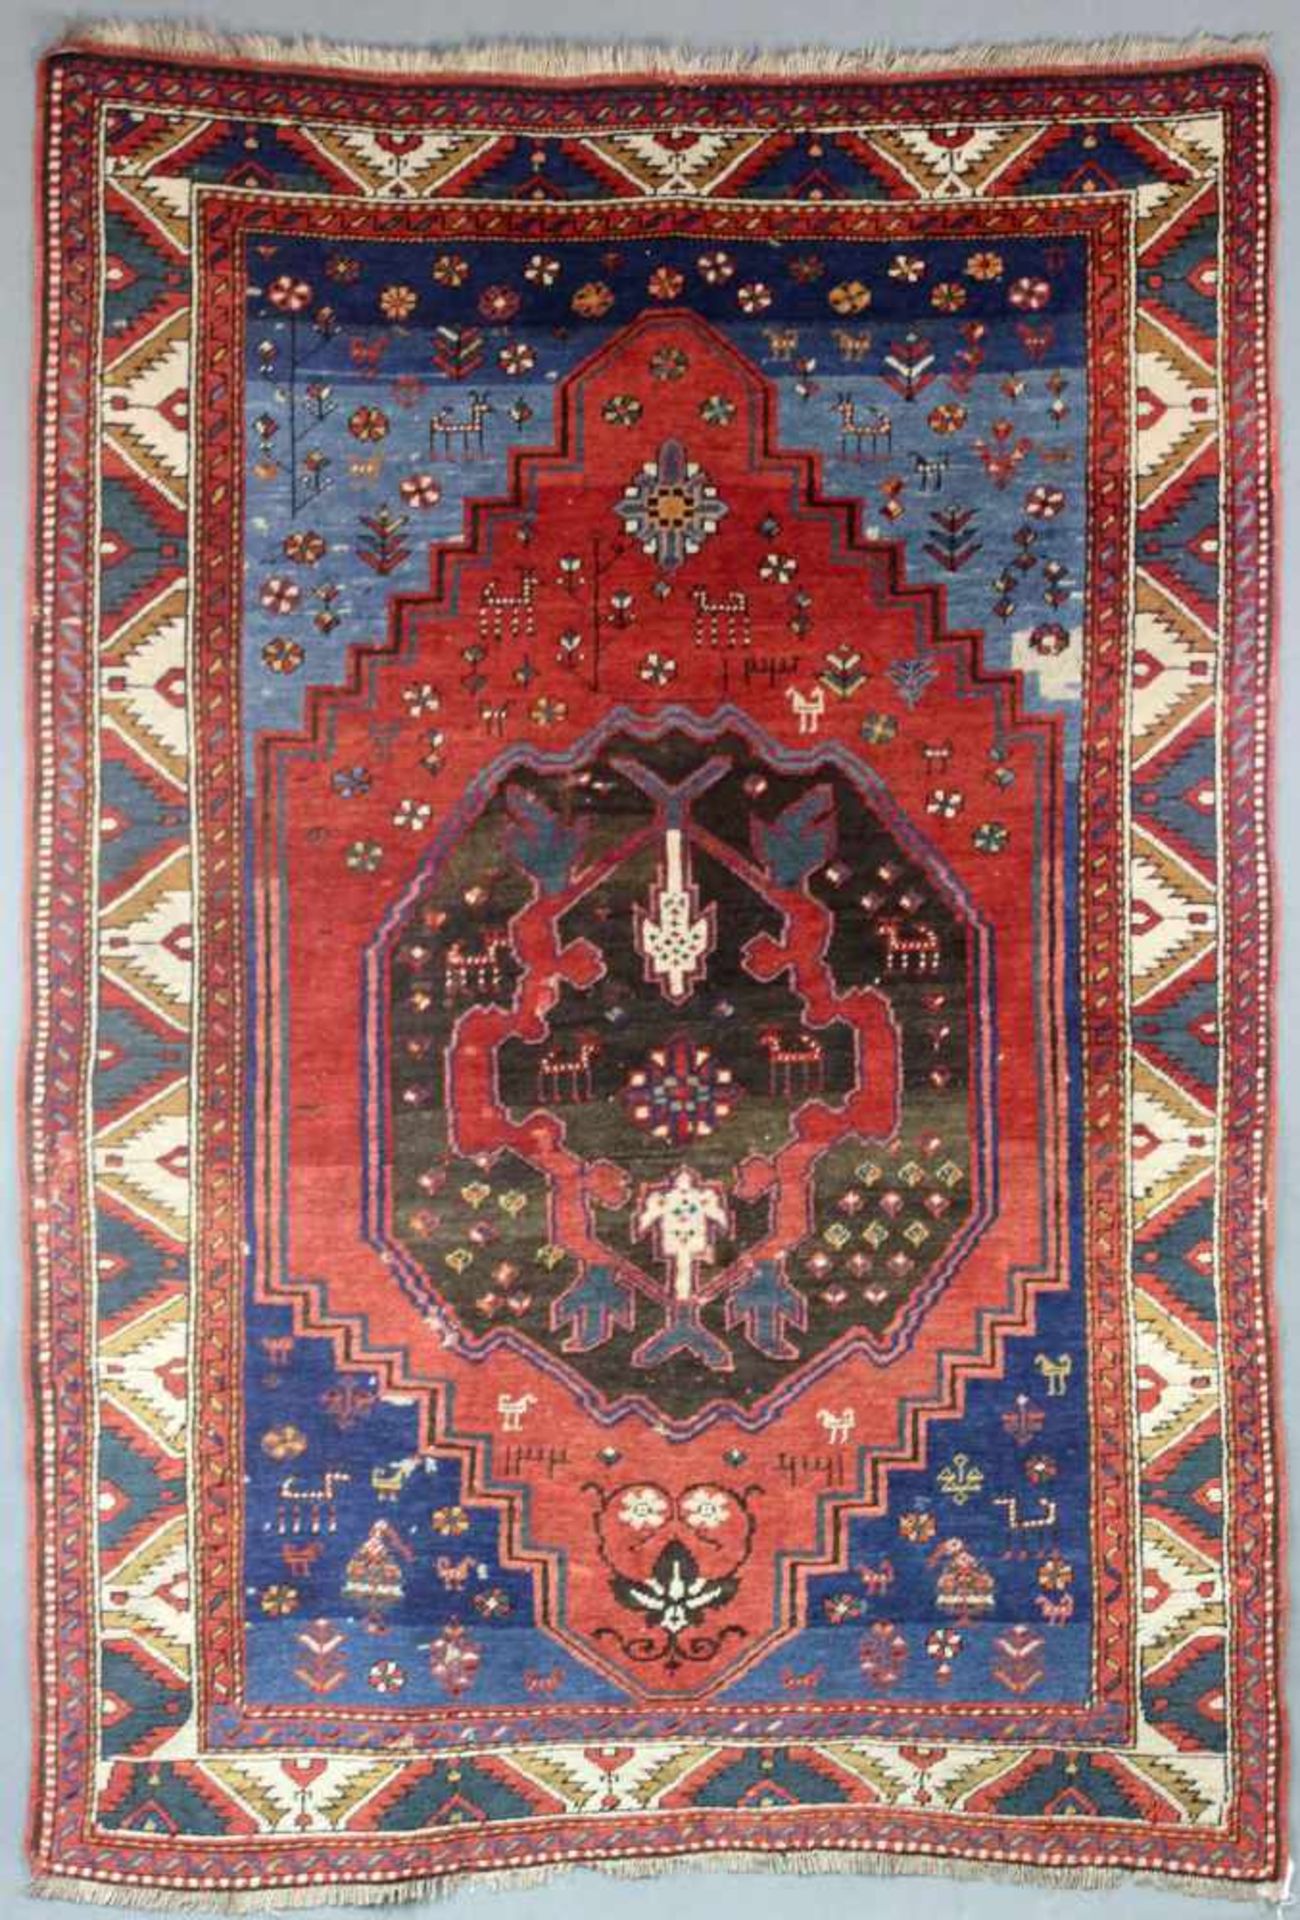 Kasak Dorfteppich. Kaukasus. Antik, datiert 1320 (1902) und 1330 (1912).200 cm x 144 cm.